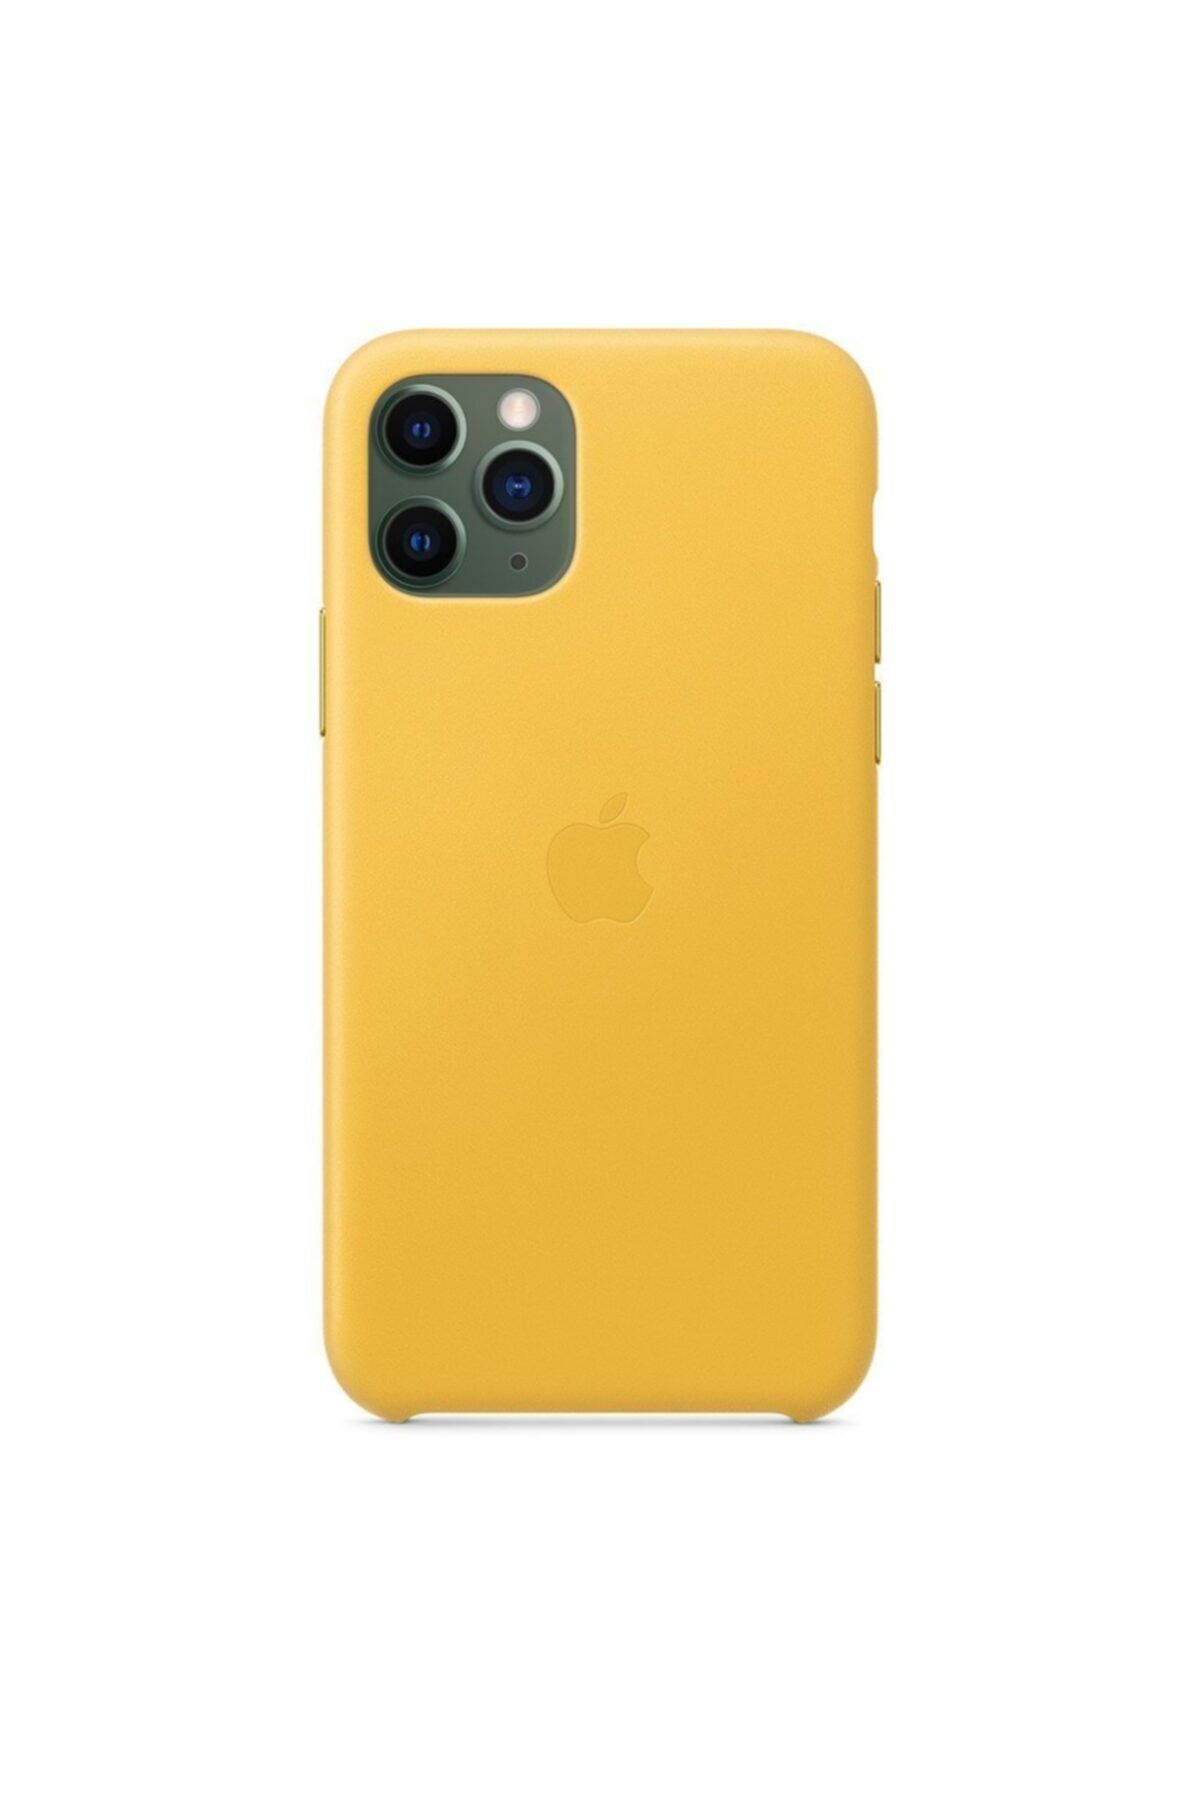 Apple Mwya2zm/a Iphone 11 Pro Derı Kılıf/mayer Limon